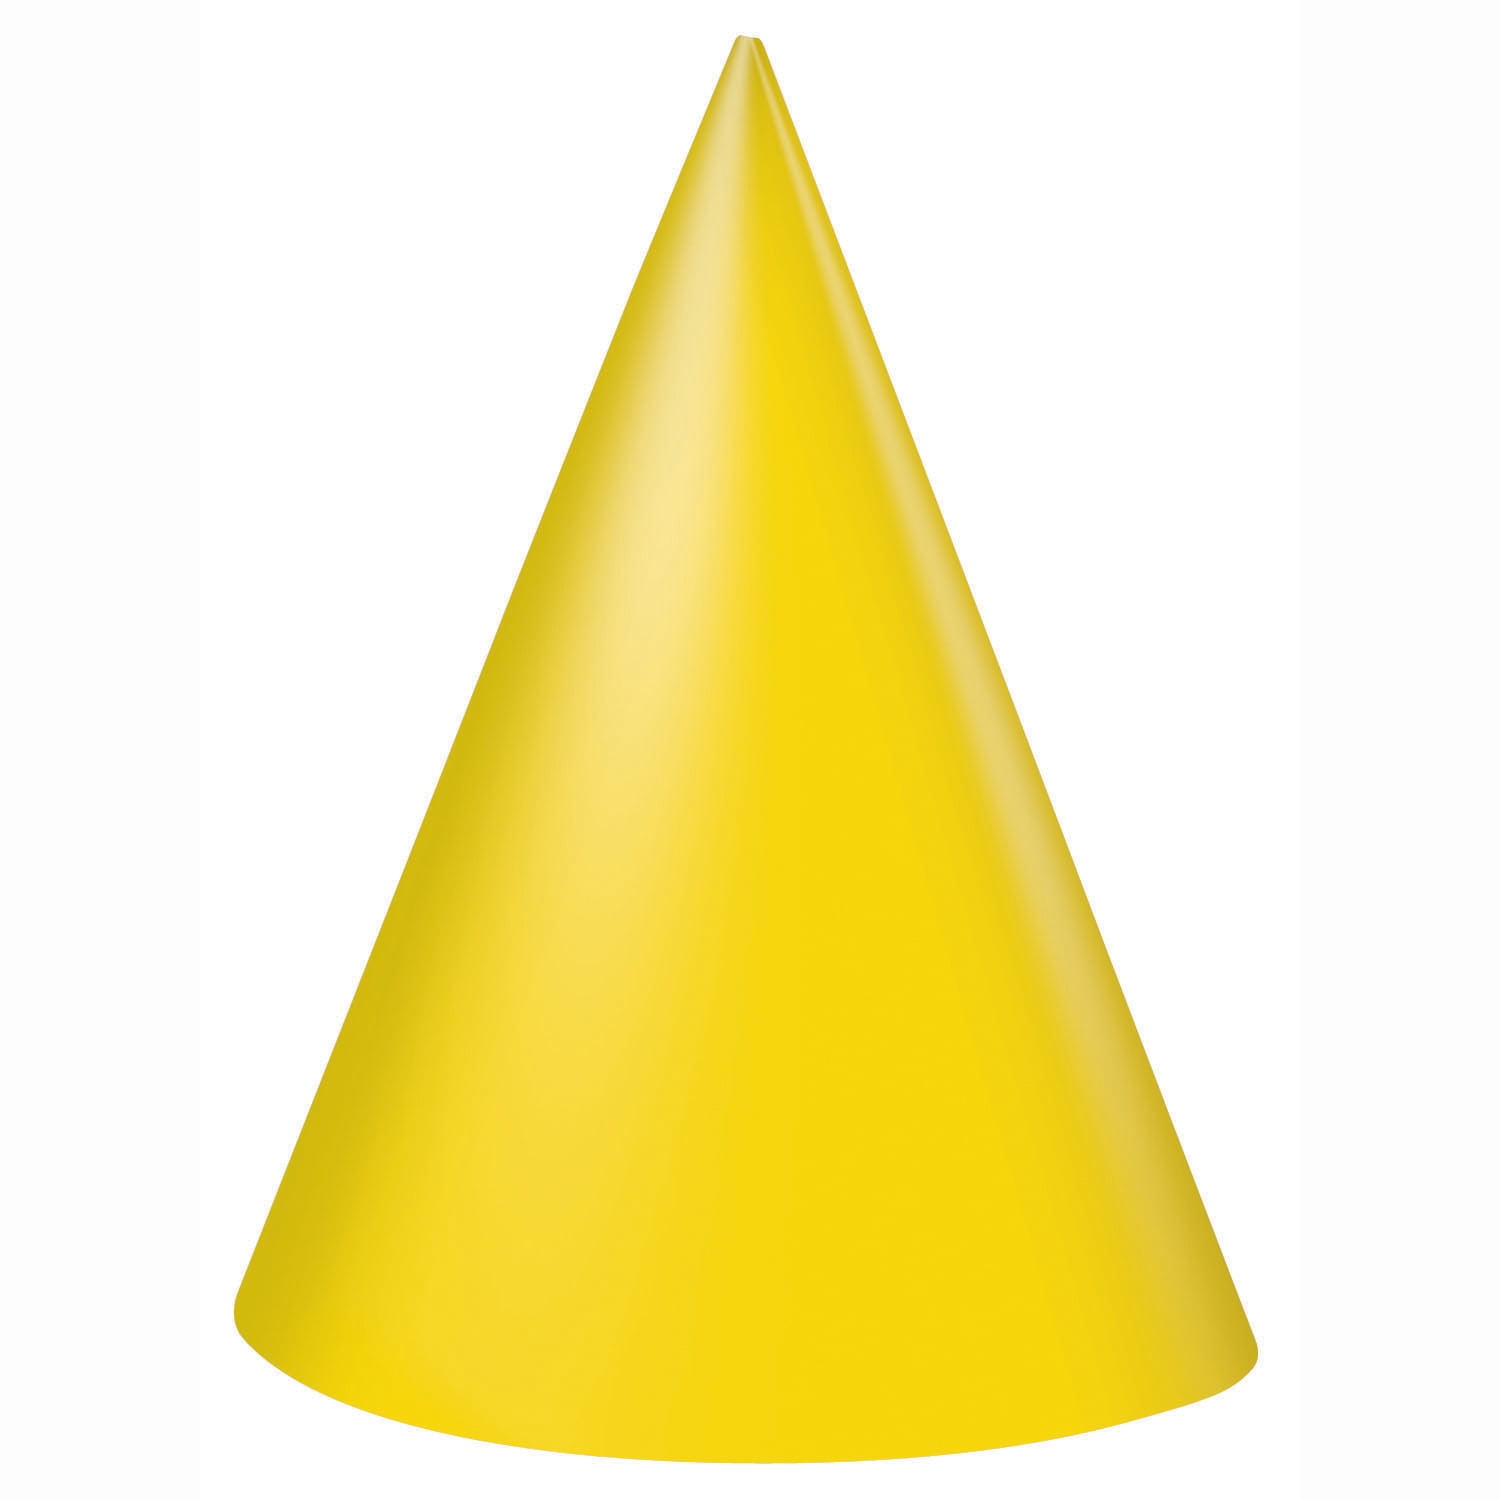 Колпак мой треугольный треугольный мой колпак. Конус Геометрическая фигура. Конус желтый. Желтый колпак. Праздничный колпак.